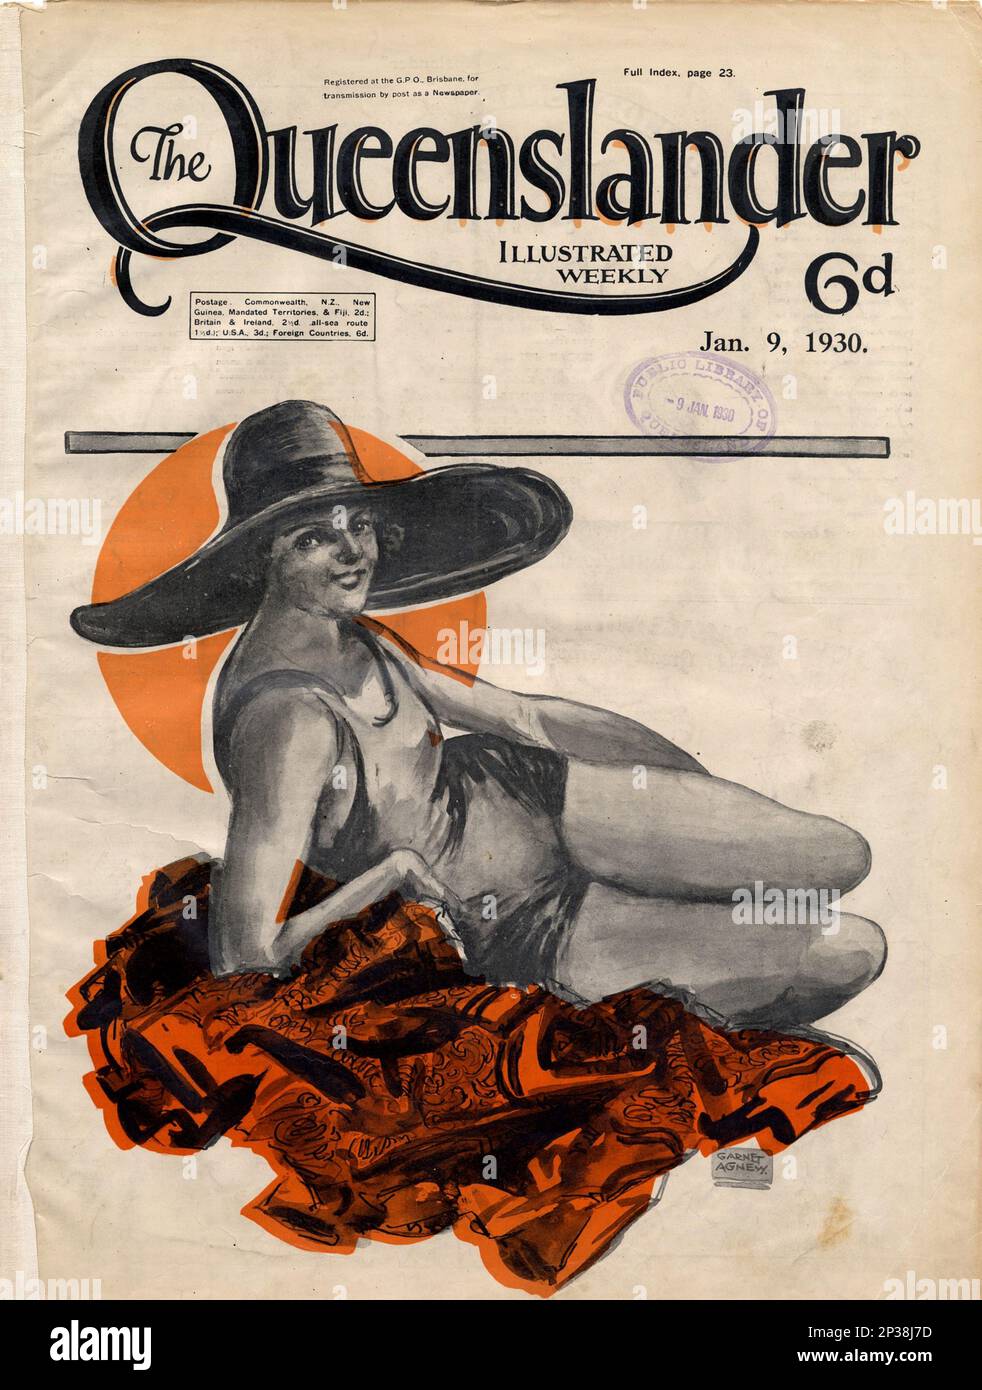 Copertina della rivista Queenslander, con gli aspetti degli stili di vita del Queensland negli anni '1920s e '1930s Foto Stock